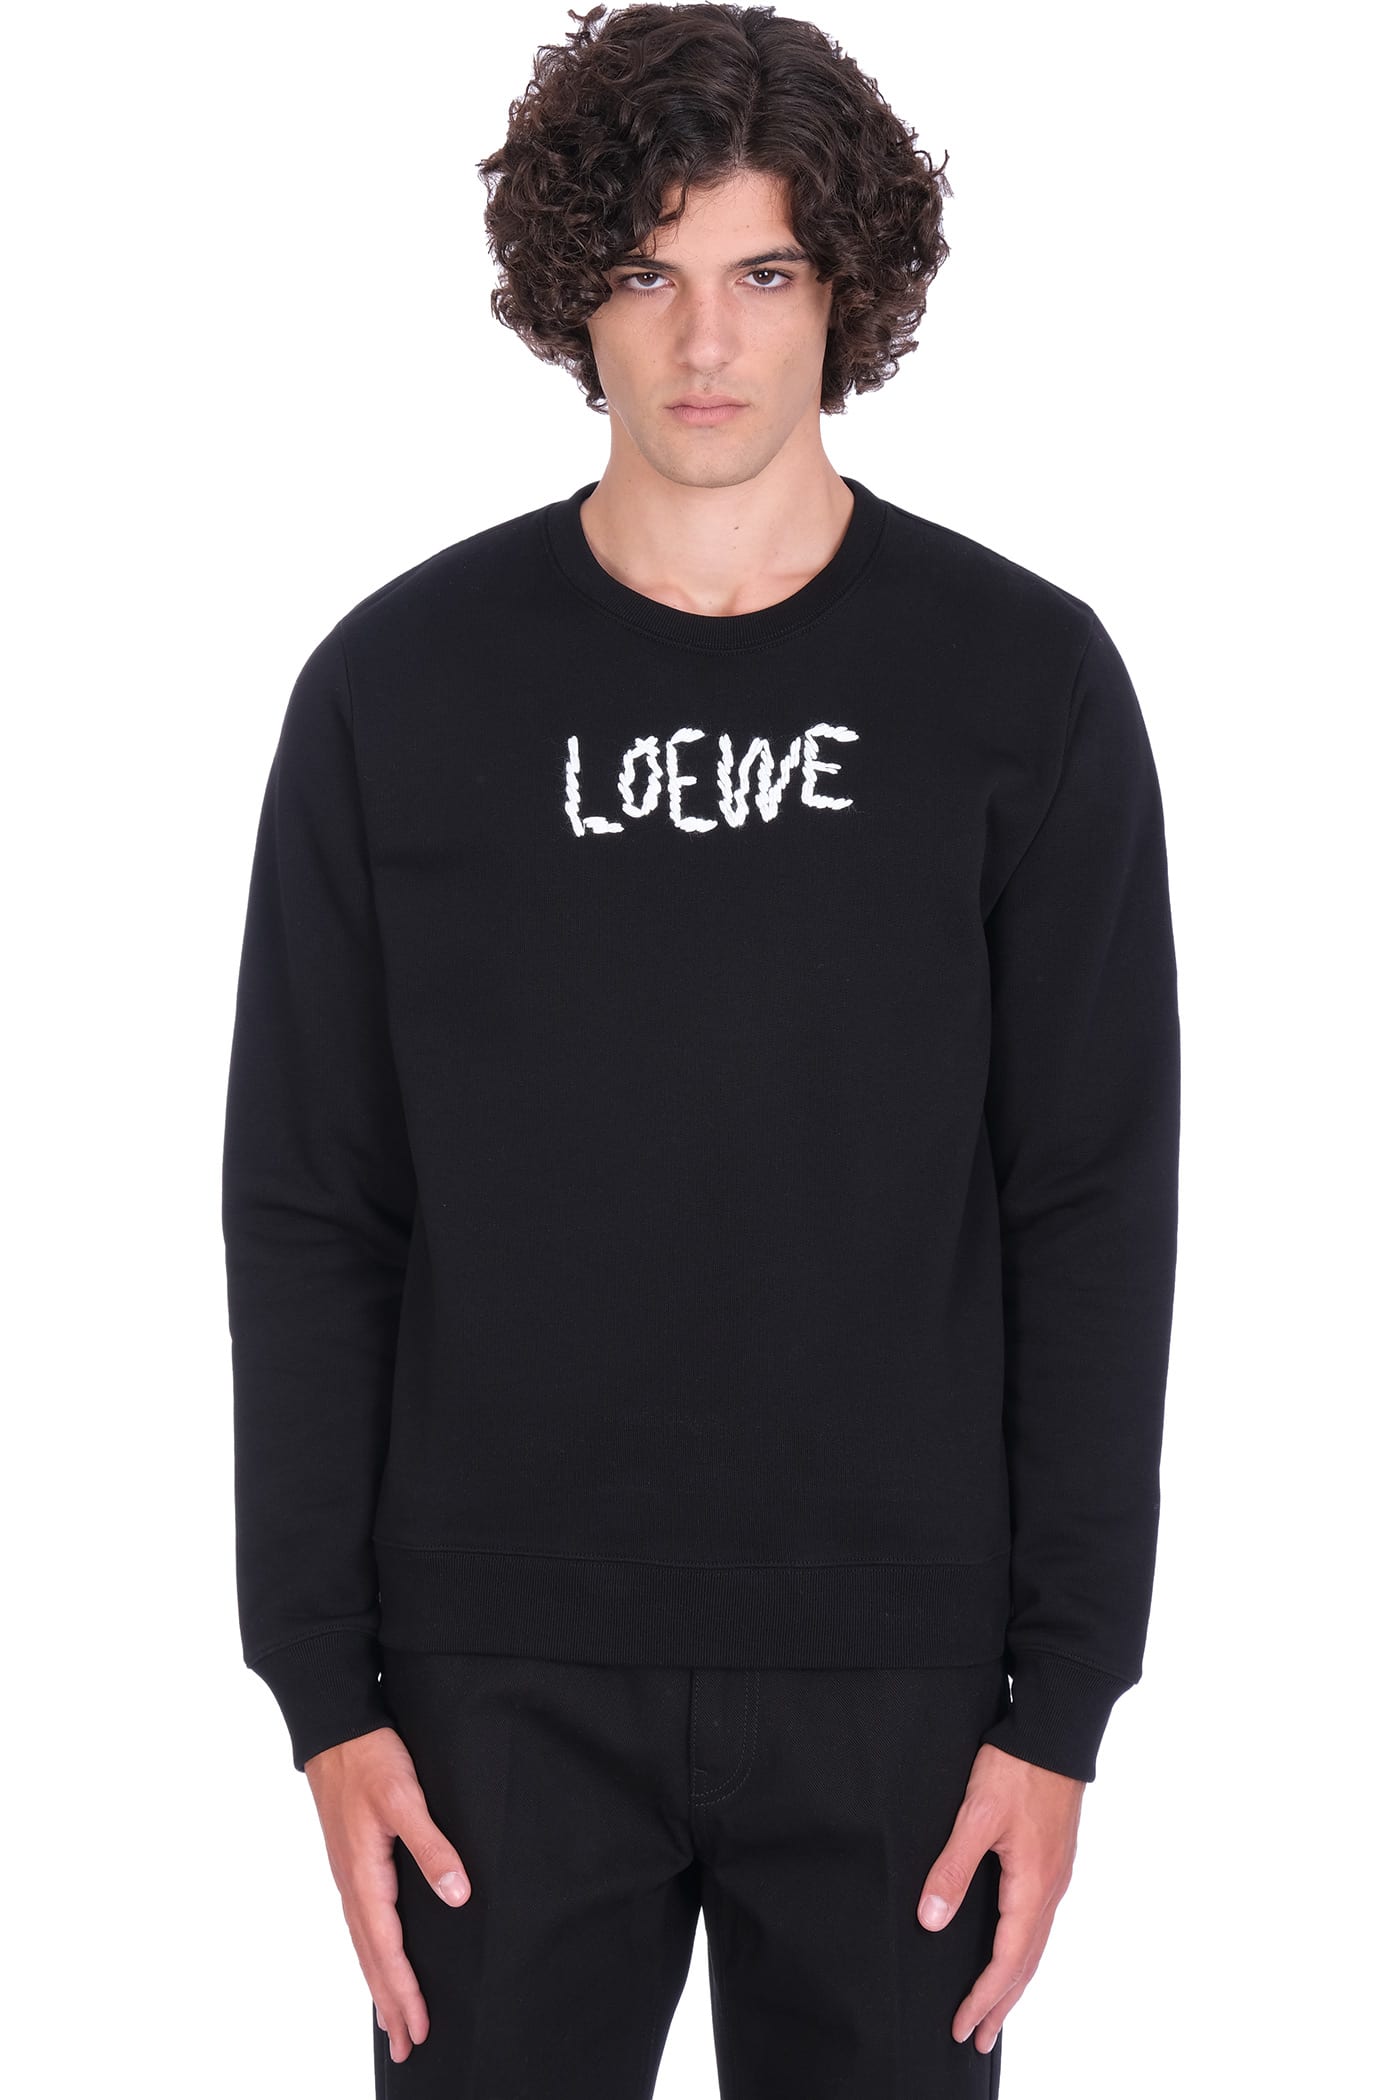 Loewe Sweatshirt In Black Acrylic